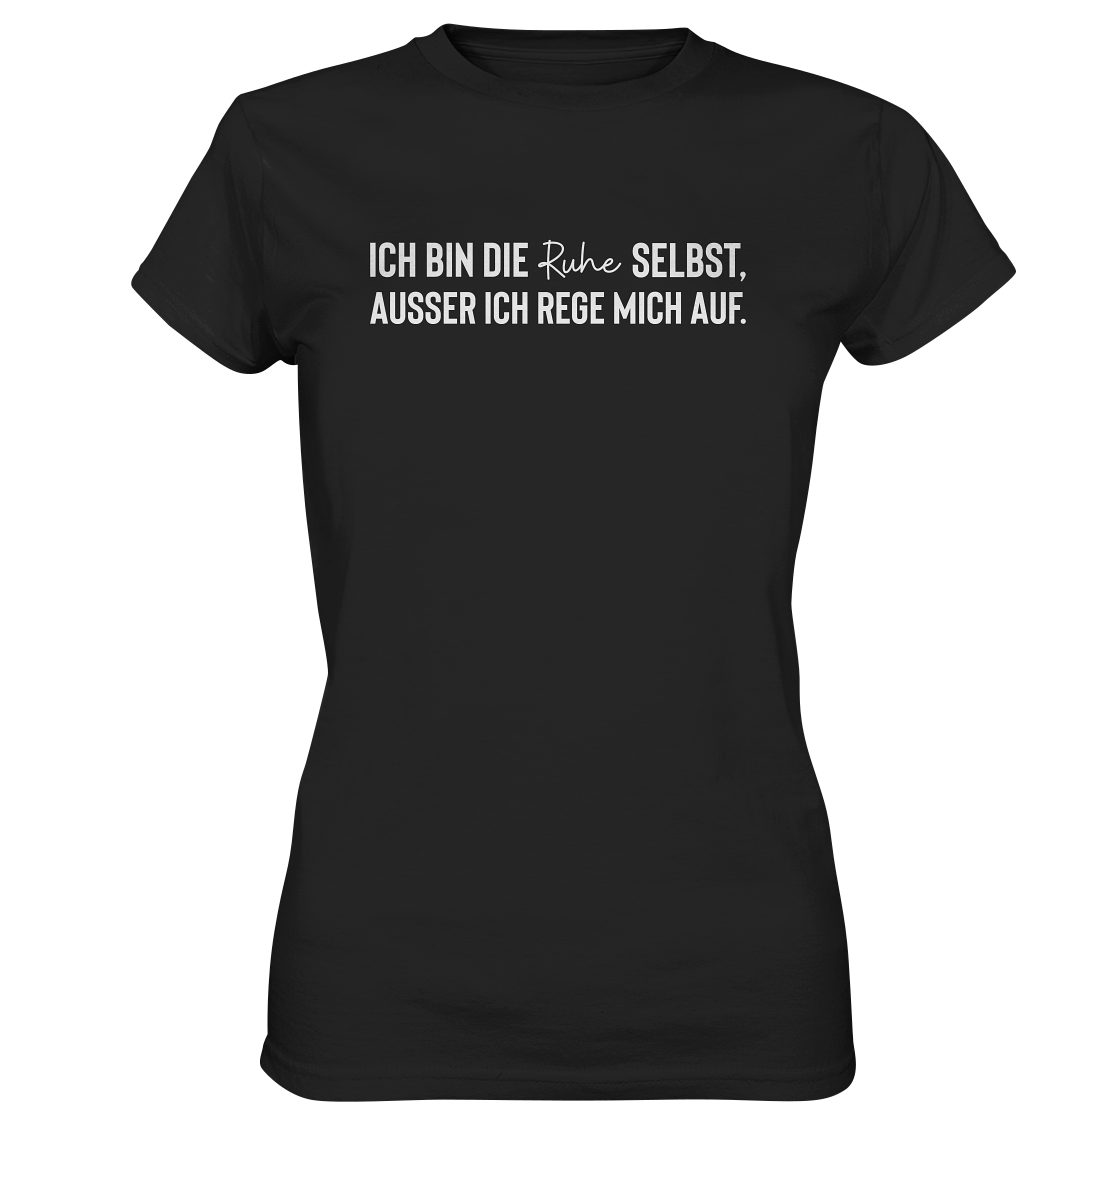 Hohe in Waschbeständigkeit, Farbbrillianz T-Shirt ausser selbst, mich rege Frauen bin auf." RABUMSEL Deutschland, Ruhe die Bedruckt - T-Shirt Hohe ich "Ich